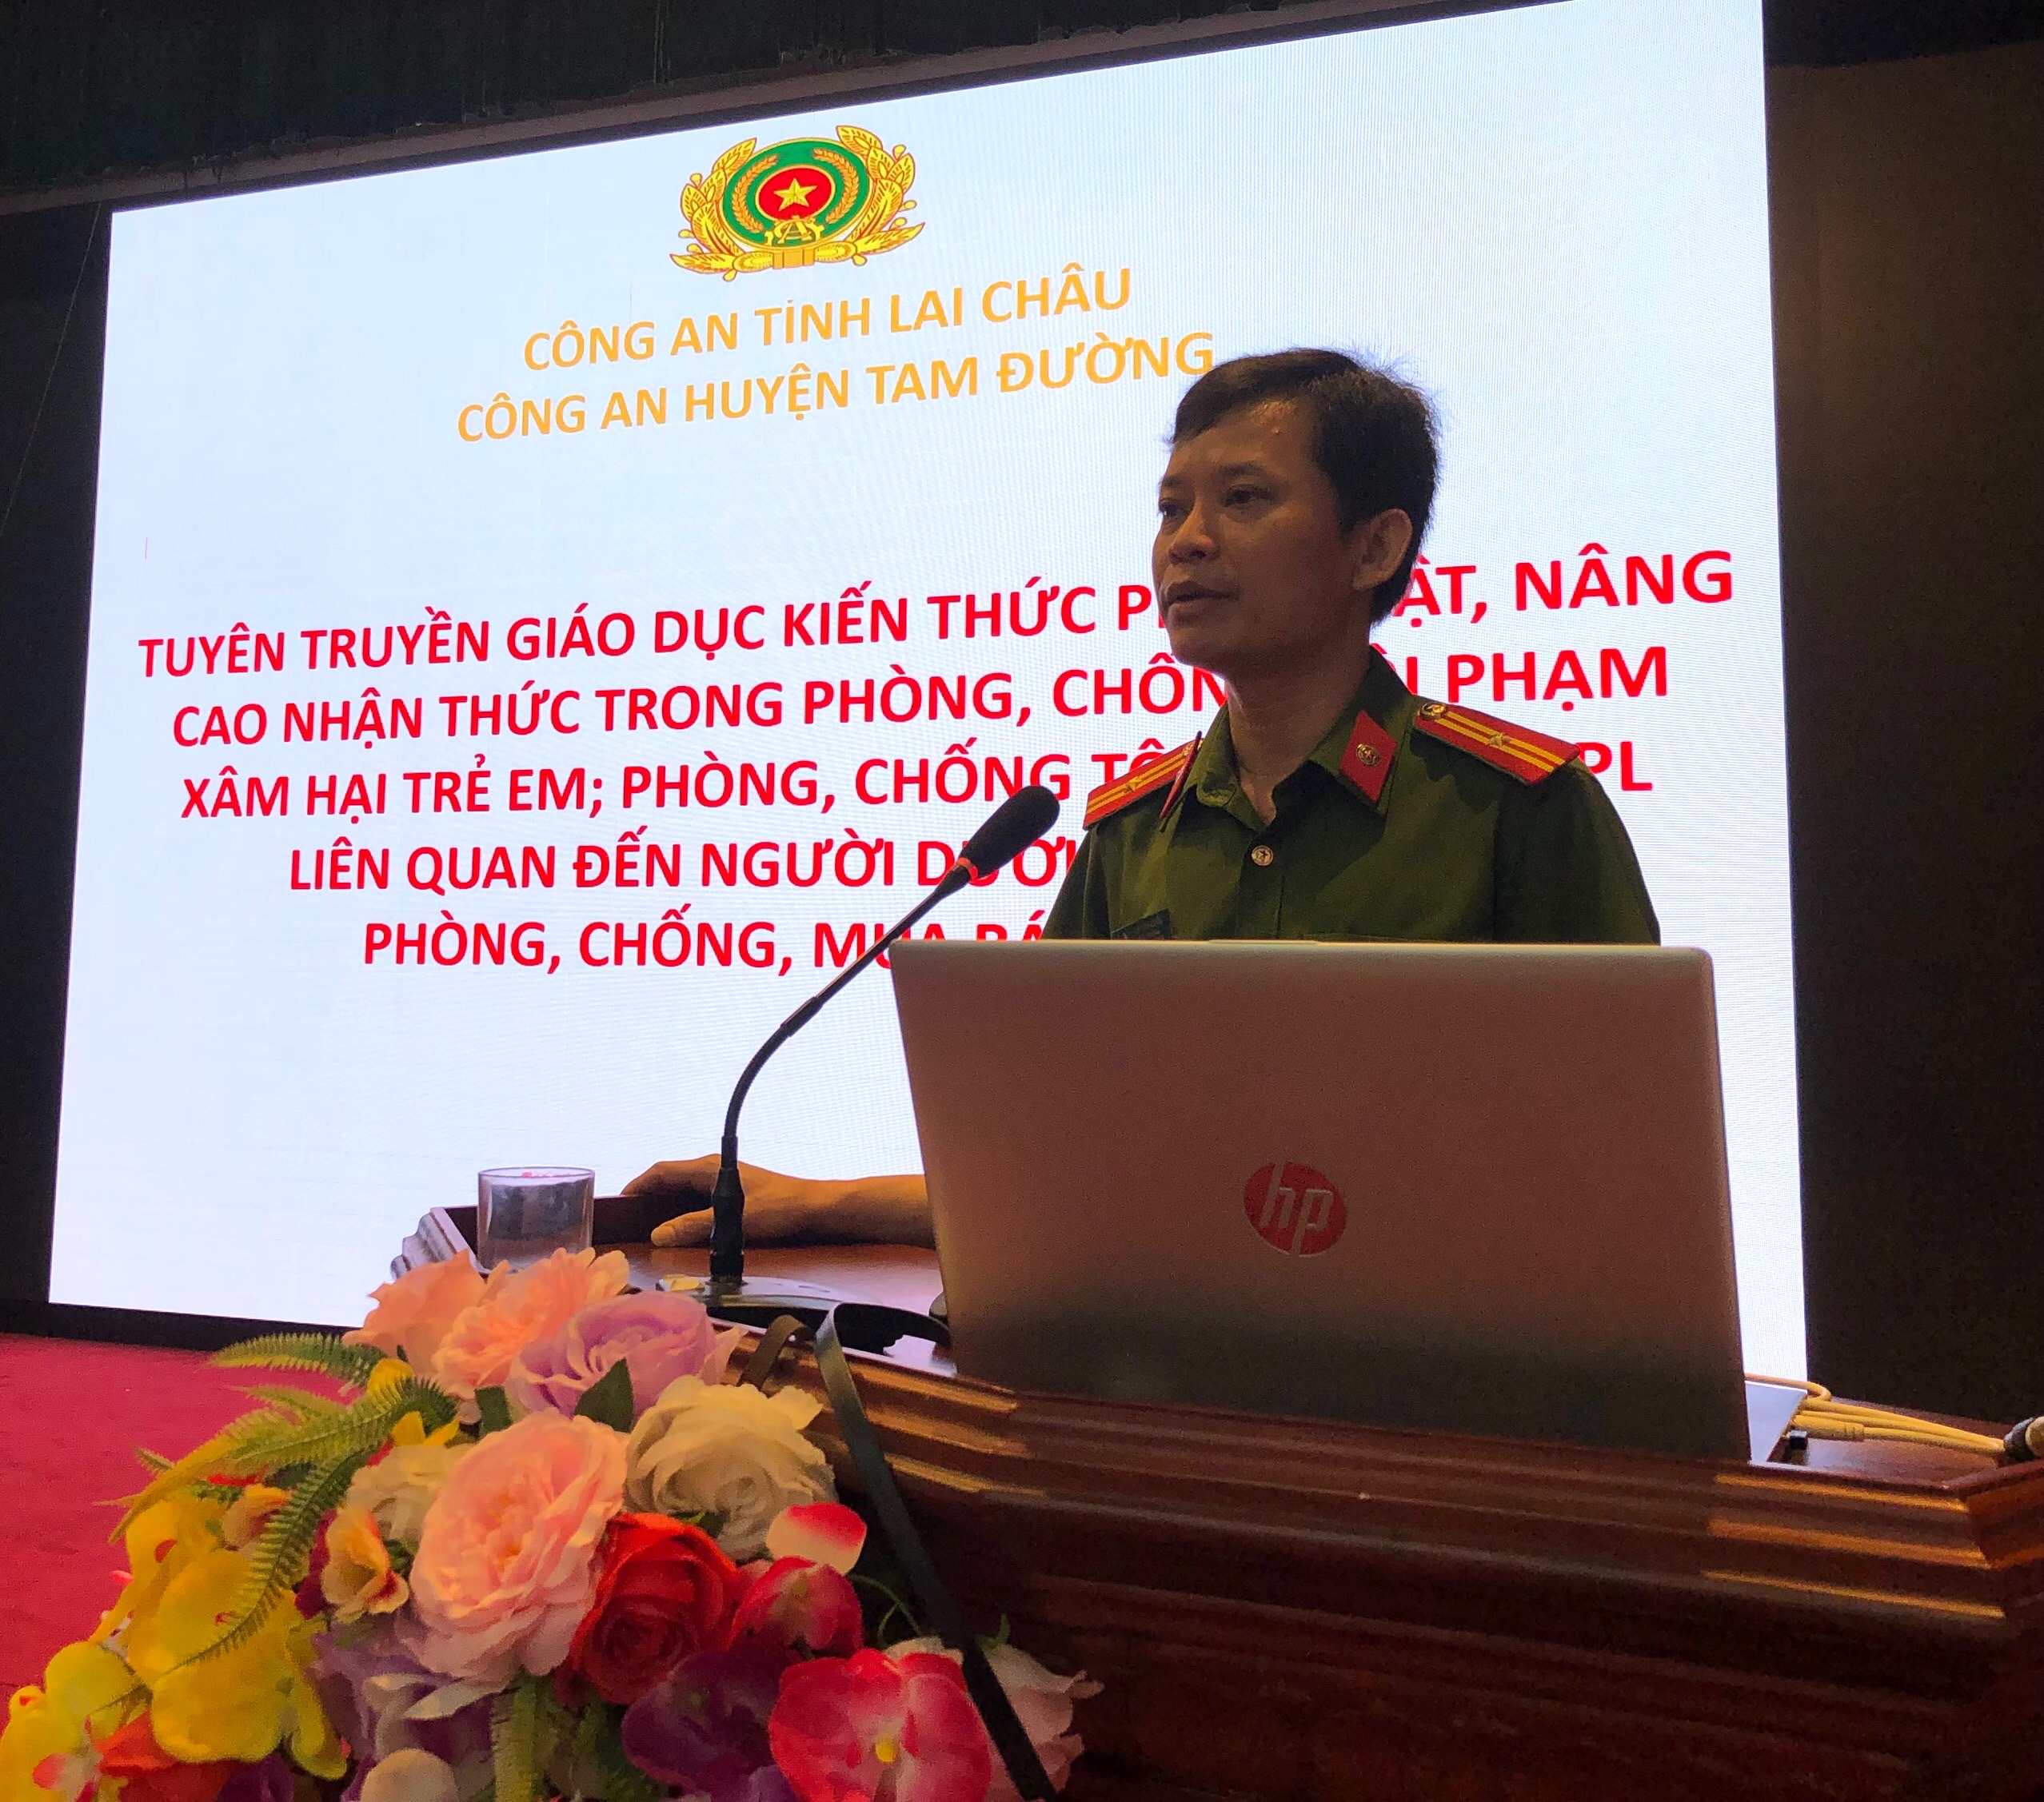 Đồng chí Thiếu tá Lò Văn Quốc, Đội trưởng Đội CSĐTTP về HS, MT, KT tuyên truyền nội dung phòng, chống tội phạm xâm hại trẻ em